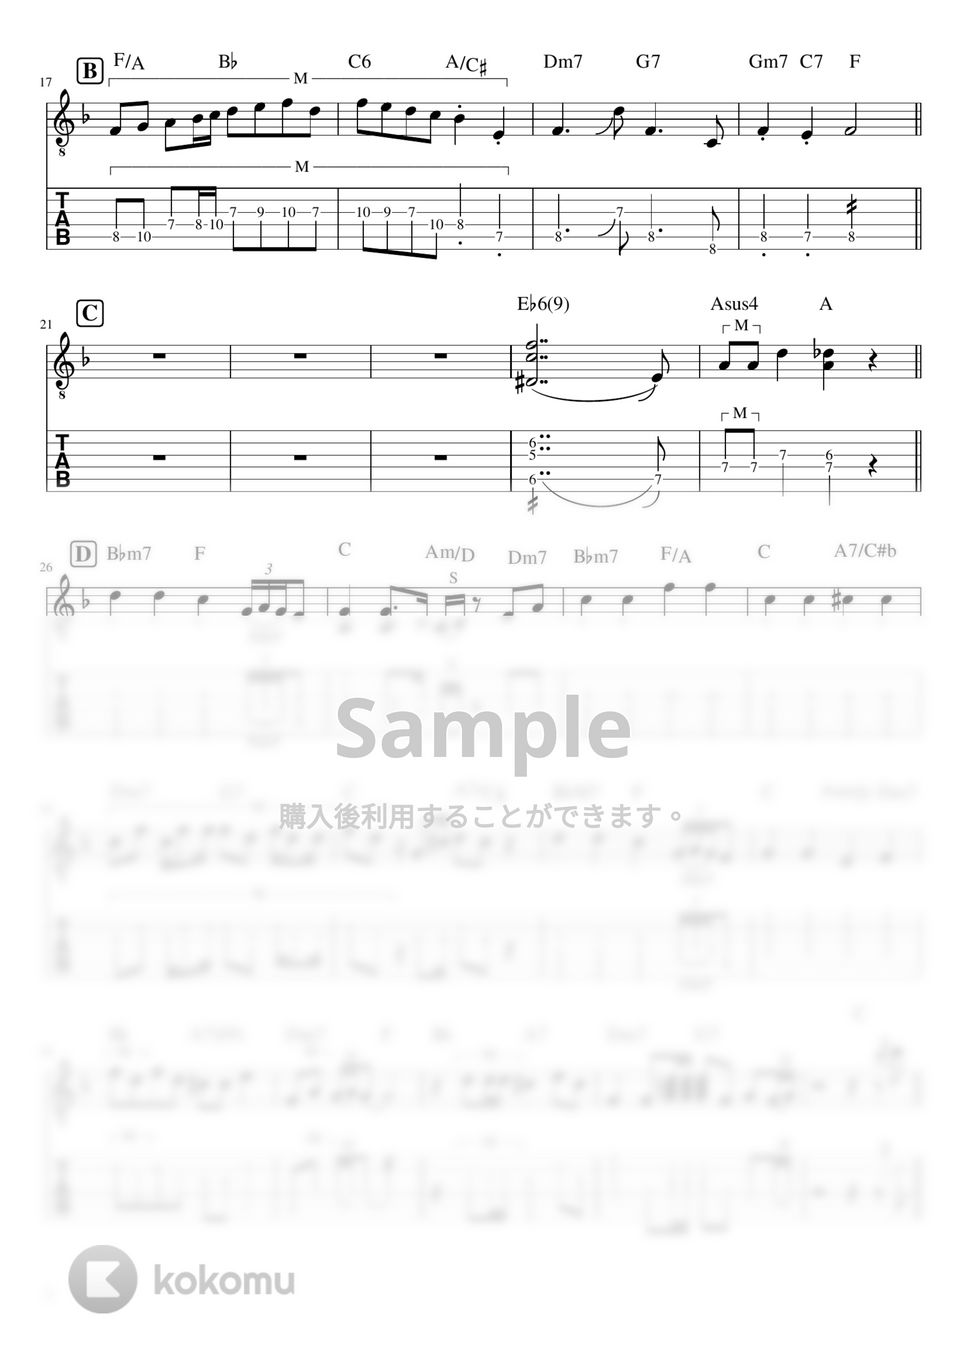 マカロニえんぴつ - ブルーベリーナイツ (リードギター) by J-ROCKギターチャンネル